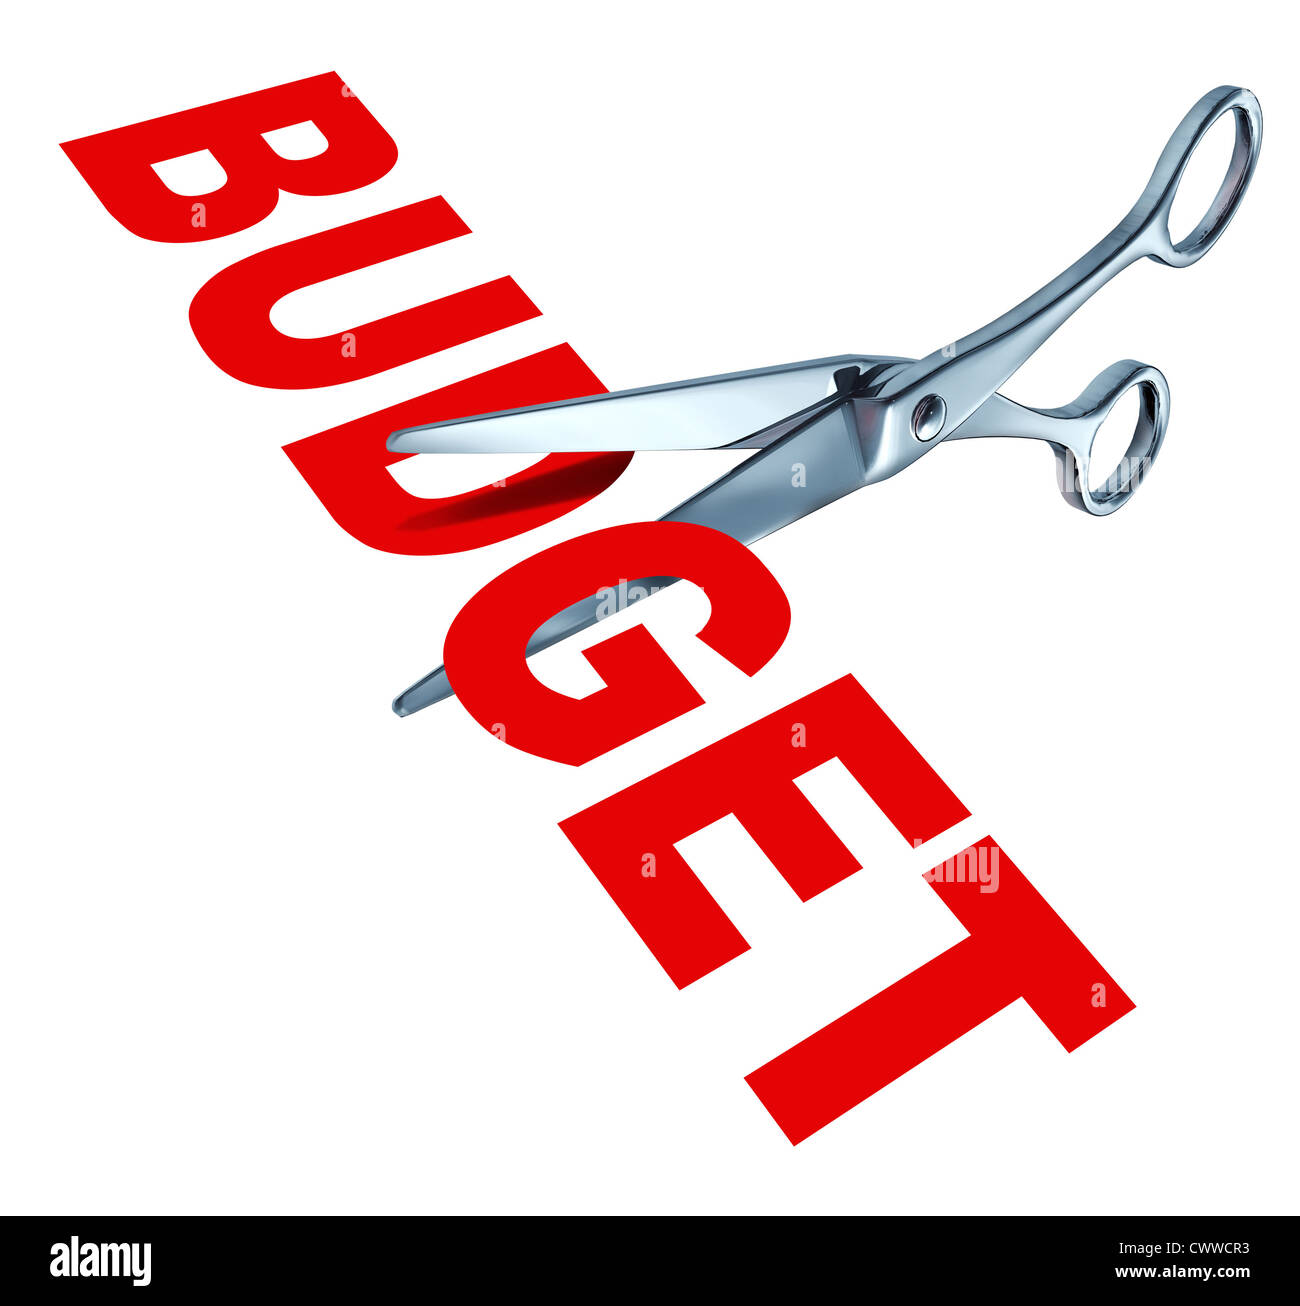 Budget Cuts Symbol zur Verringerung der budgetierten Ausgaben durch Einsparung von Kosten und finanziellen Überschuss vertreten durch scharfe offene Metallscheren zu beseitigen. Stockfoto